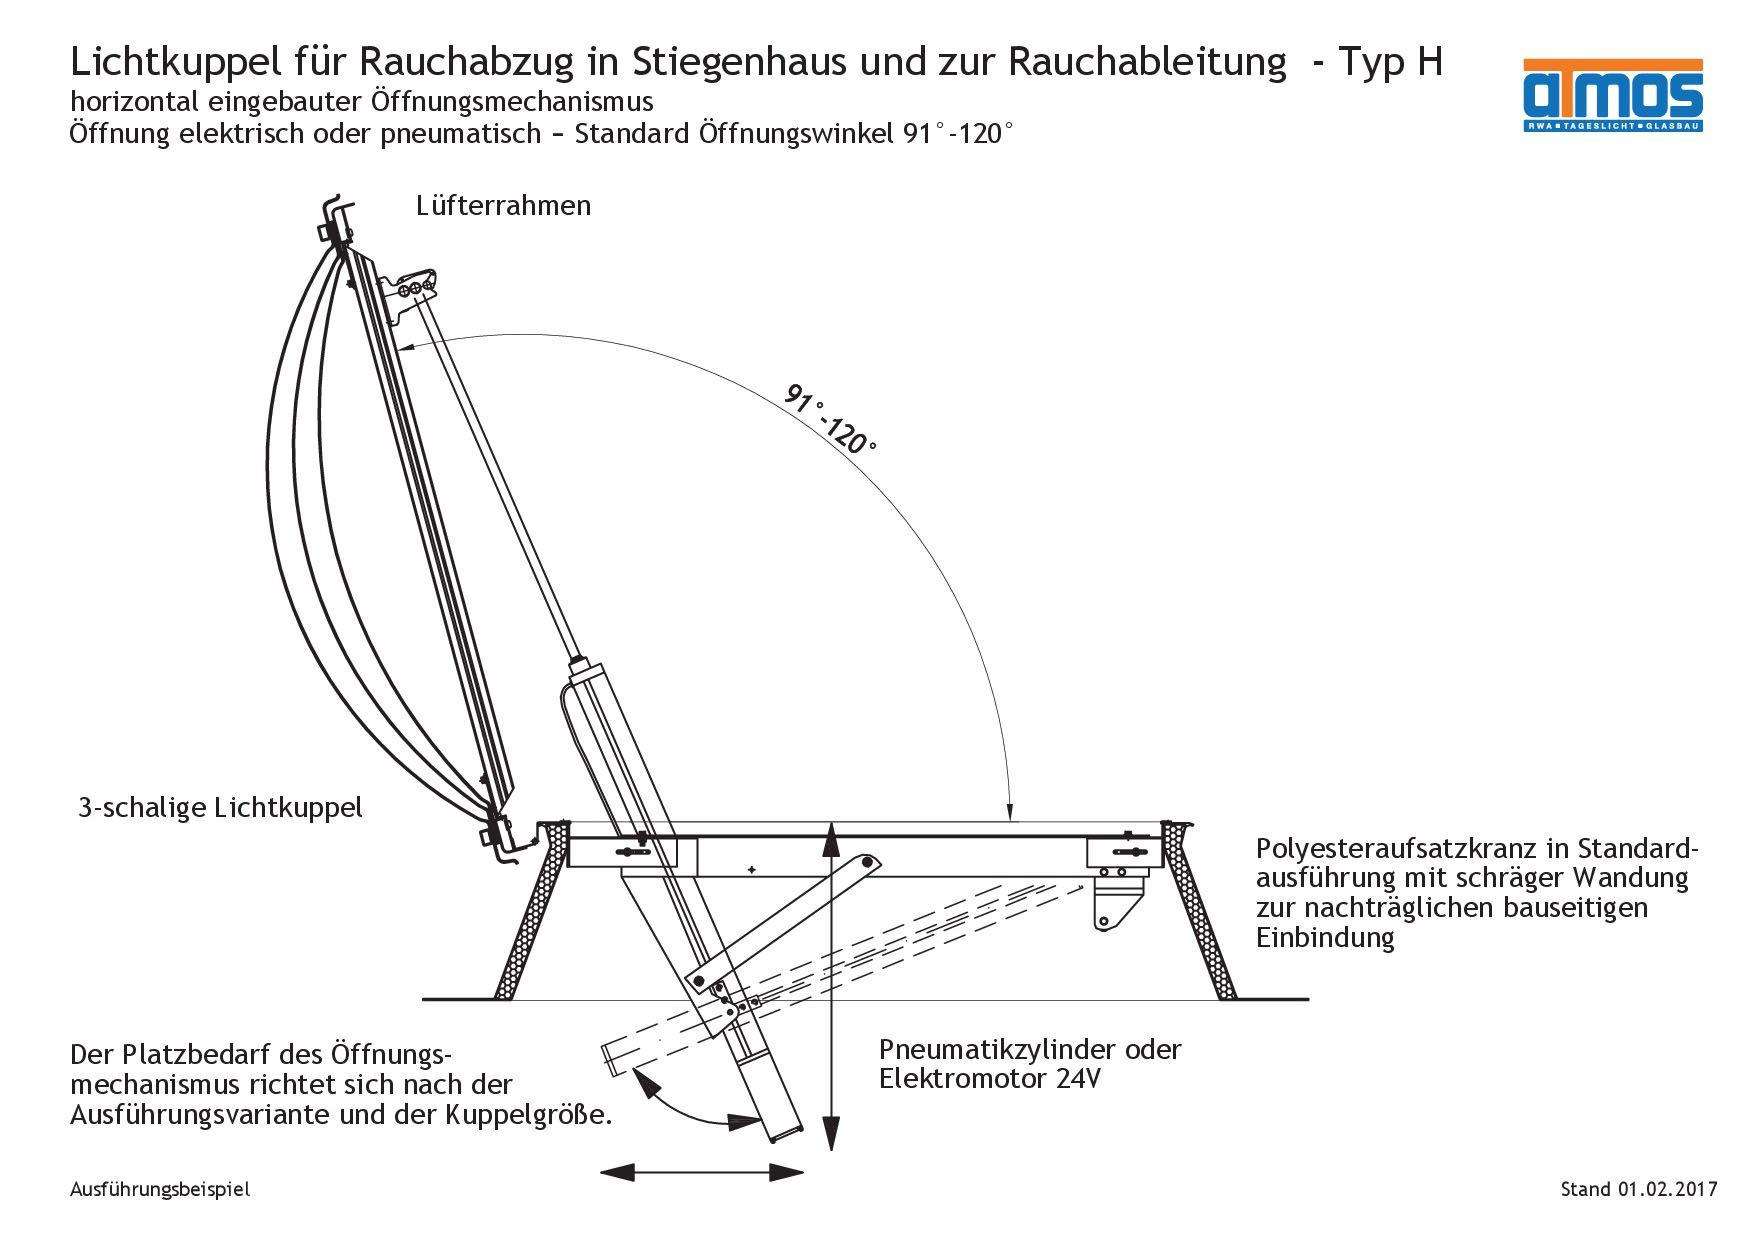 Lichtkuppel als Rauchabzug für Stiegenhäuser/Rauchableitung, Standard-Öffnungswinkel 91°-120°